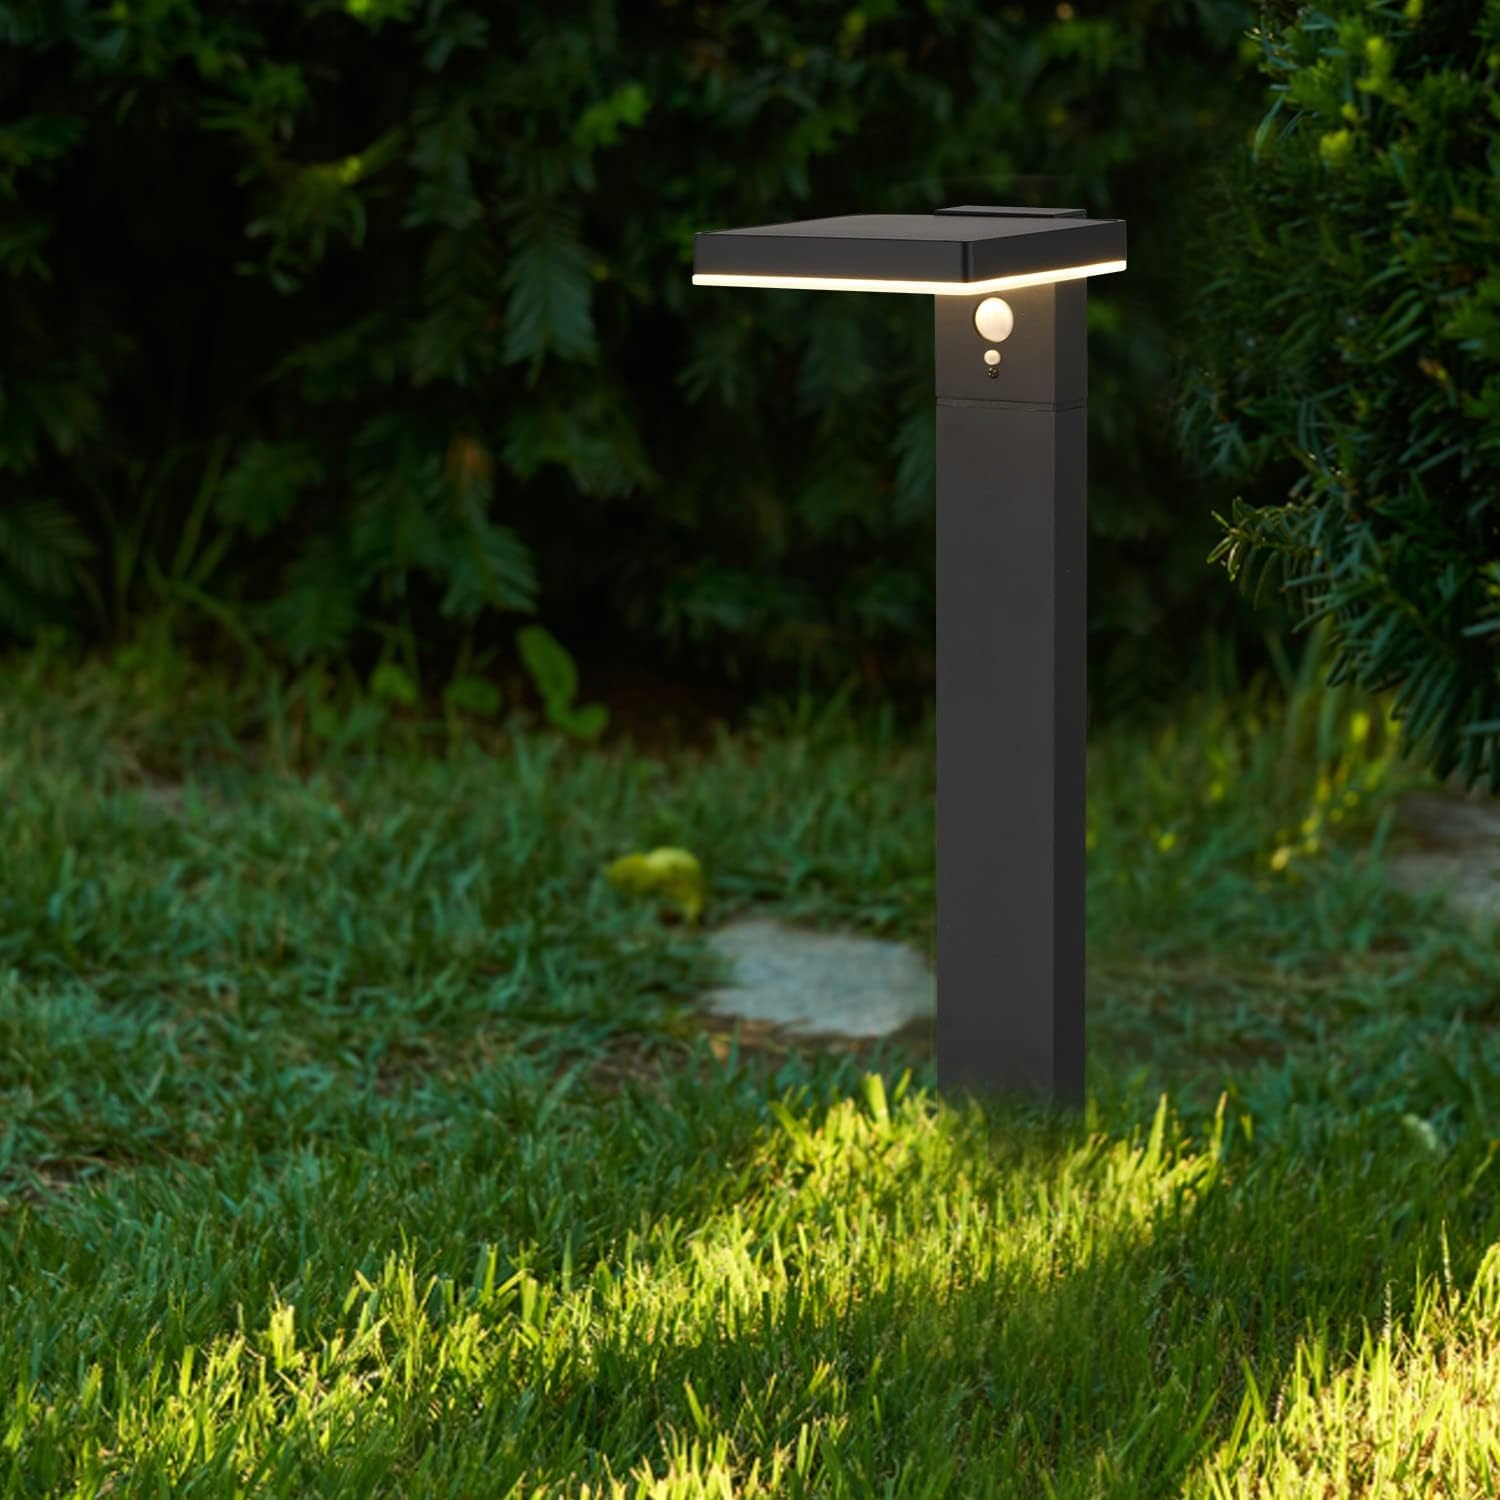 Lampa ogrodowa LED SOLARNA 600 lm SŁUPEK OGRODOWY 50 cm PREMIUM Cechy dodatkowe możliwość pracy w temperaturze poniżej zera wodoodporność